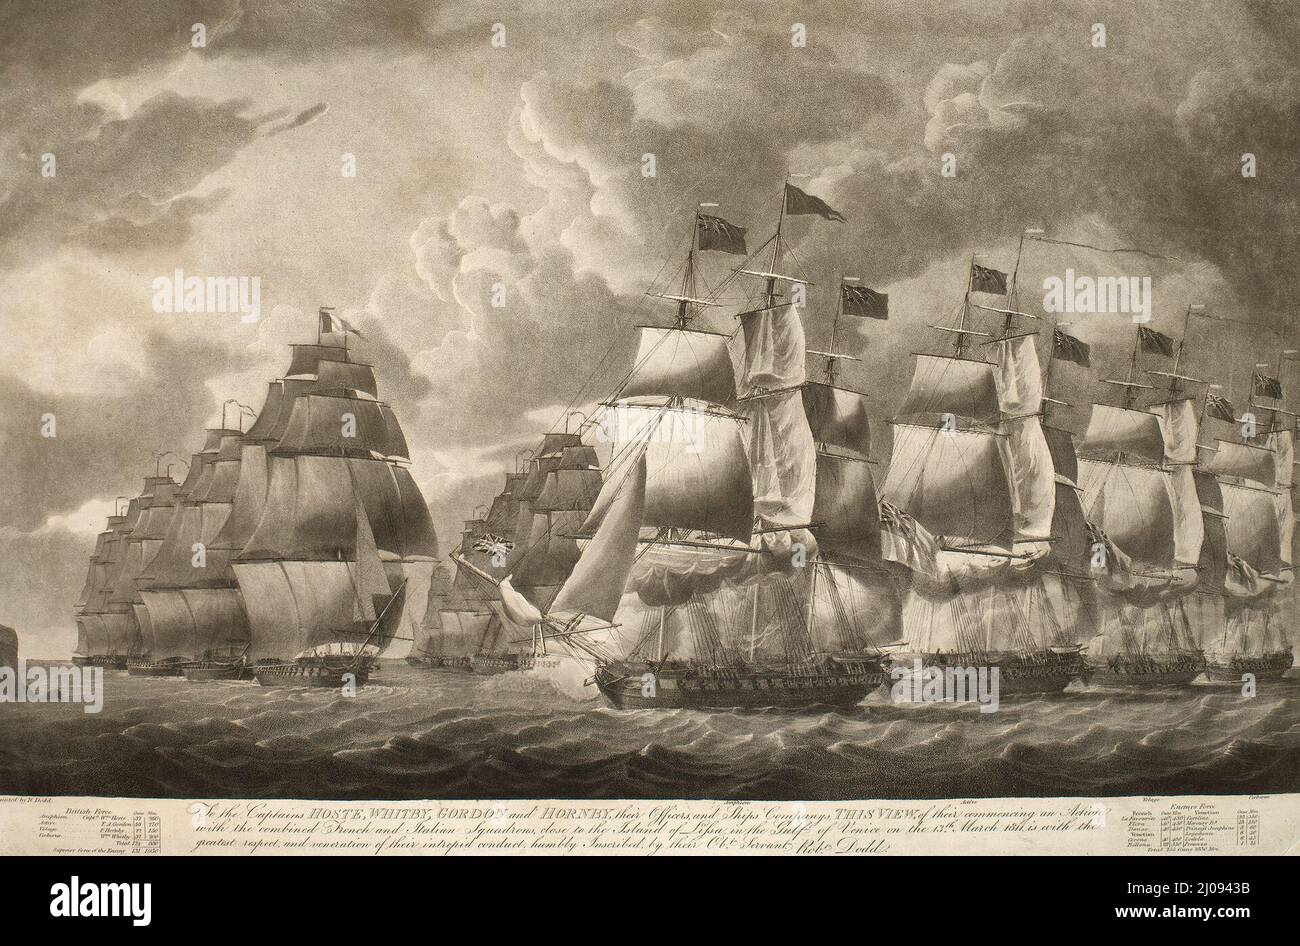 Una vista de la Batalla de Lissa (o Batalla de Vis), luchada el 13 de marzo de 1811 entre un escuadrón francés y veneciano combinado, comandado por el contralmirante Bernard Dubourdieu (1773-1811), y un escuadrón británico más pequeño, comandado por el capitán William Hoste (1780-1828), resultando en una victoria británica. Guerras napoleónicas (1803-15) Foto de stock